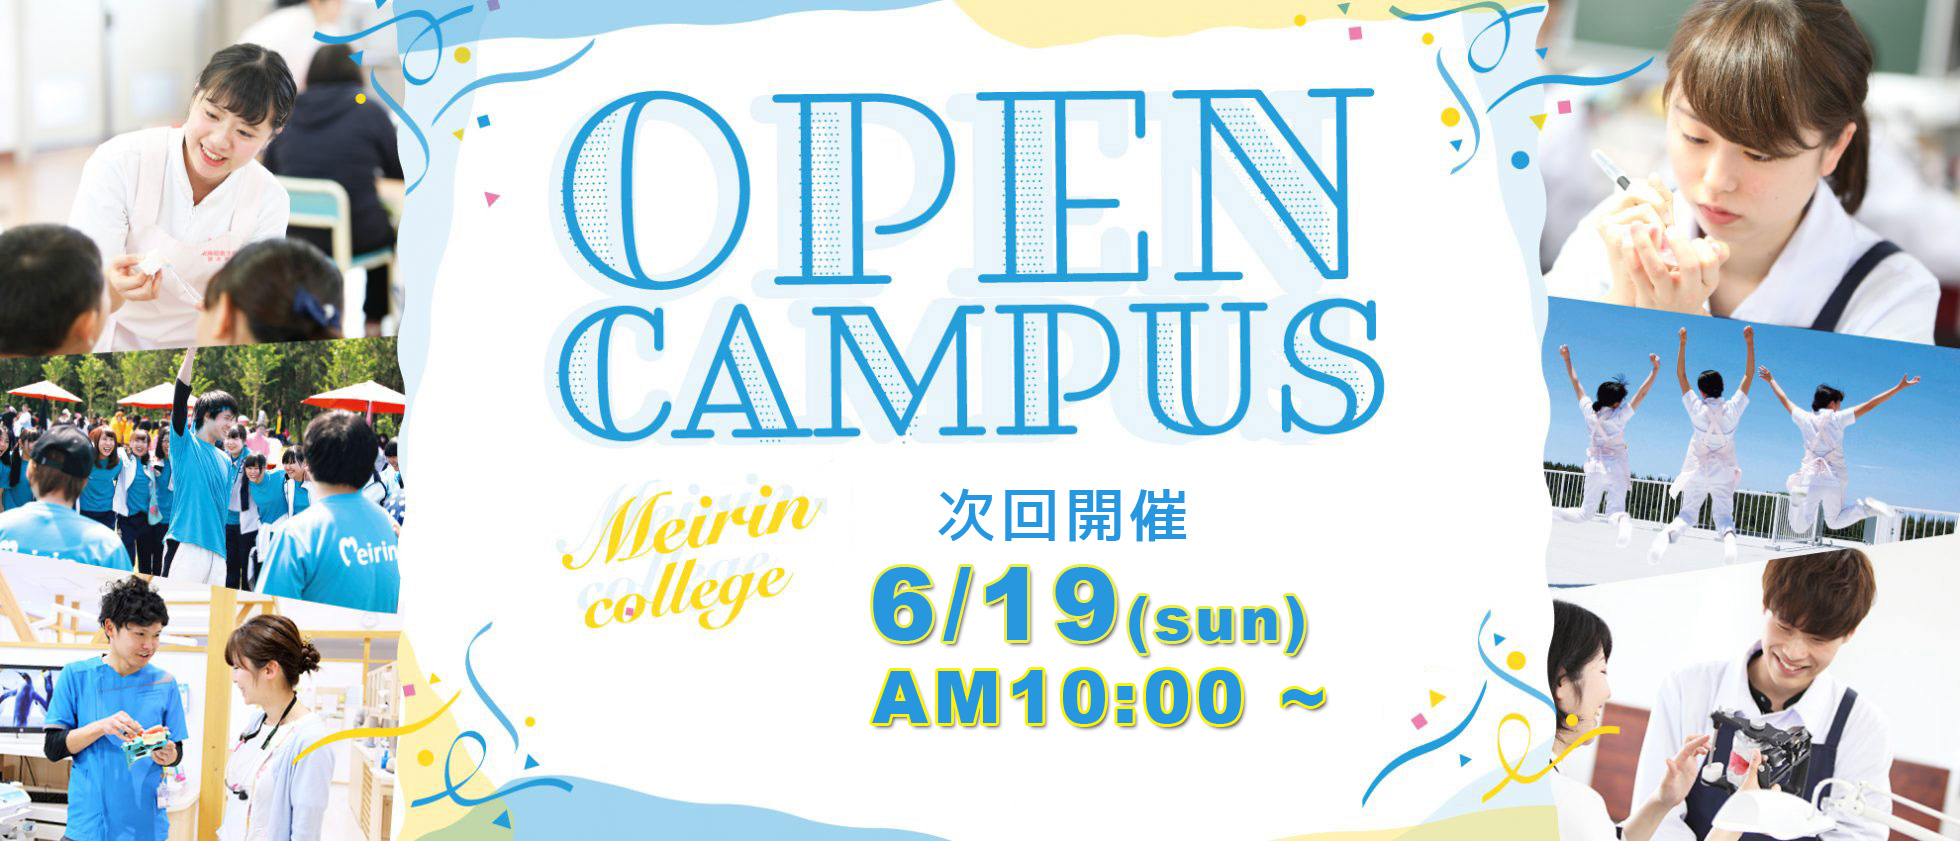 OPEN CAMPUS 2022年度オープンキャンパスが開催されています!歯科技工士、歯科衛生士の職業内容や、国家試験合格を目指す教育内容についてご説明します。